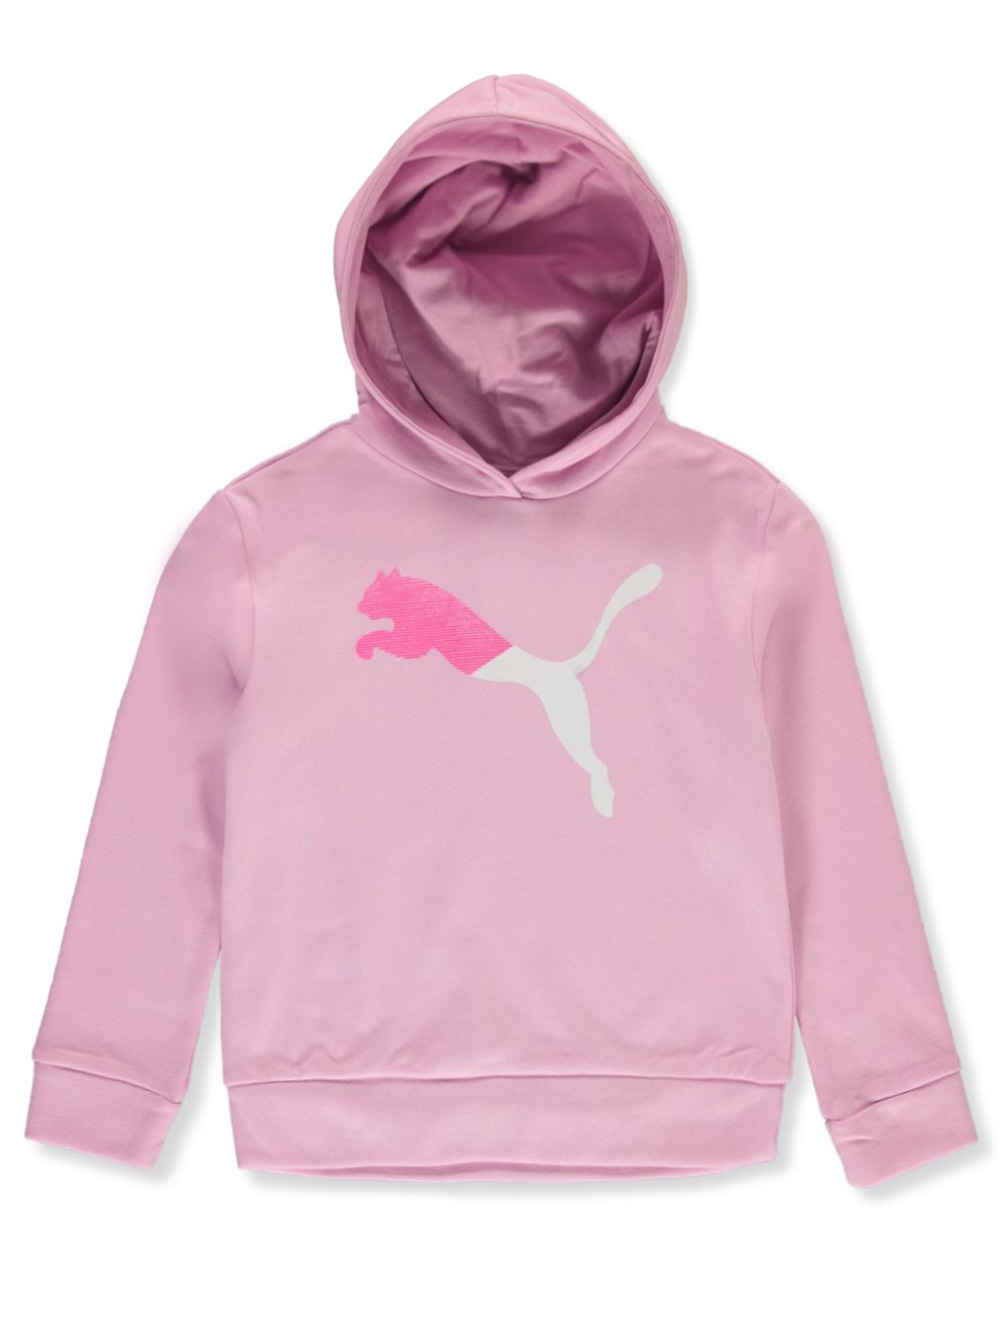 pink puma hoodie